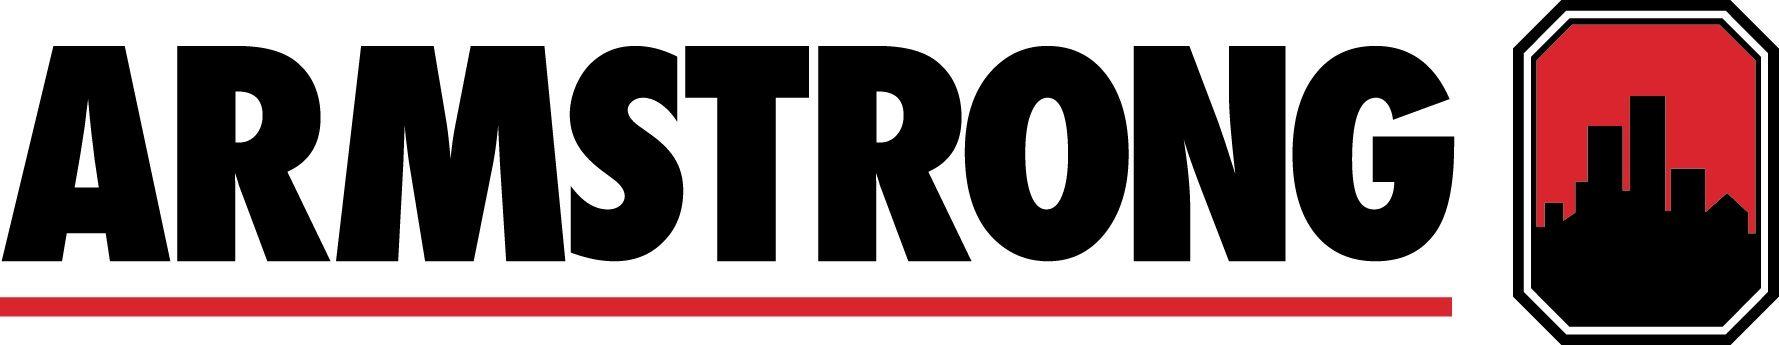 Armstrong Logo - Armstrong Logos